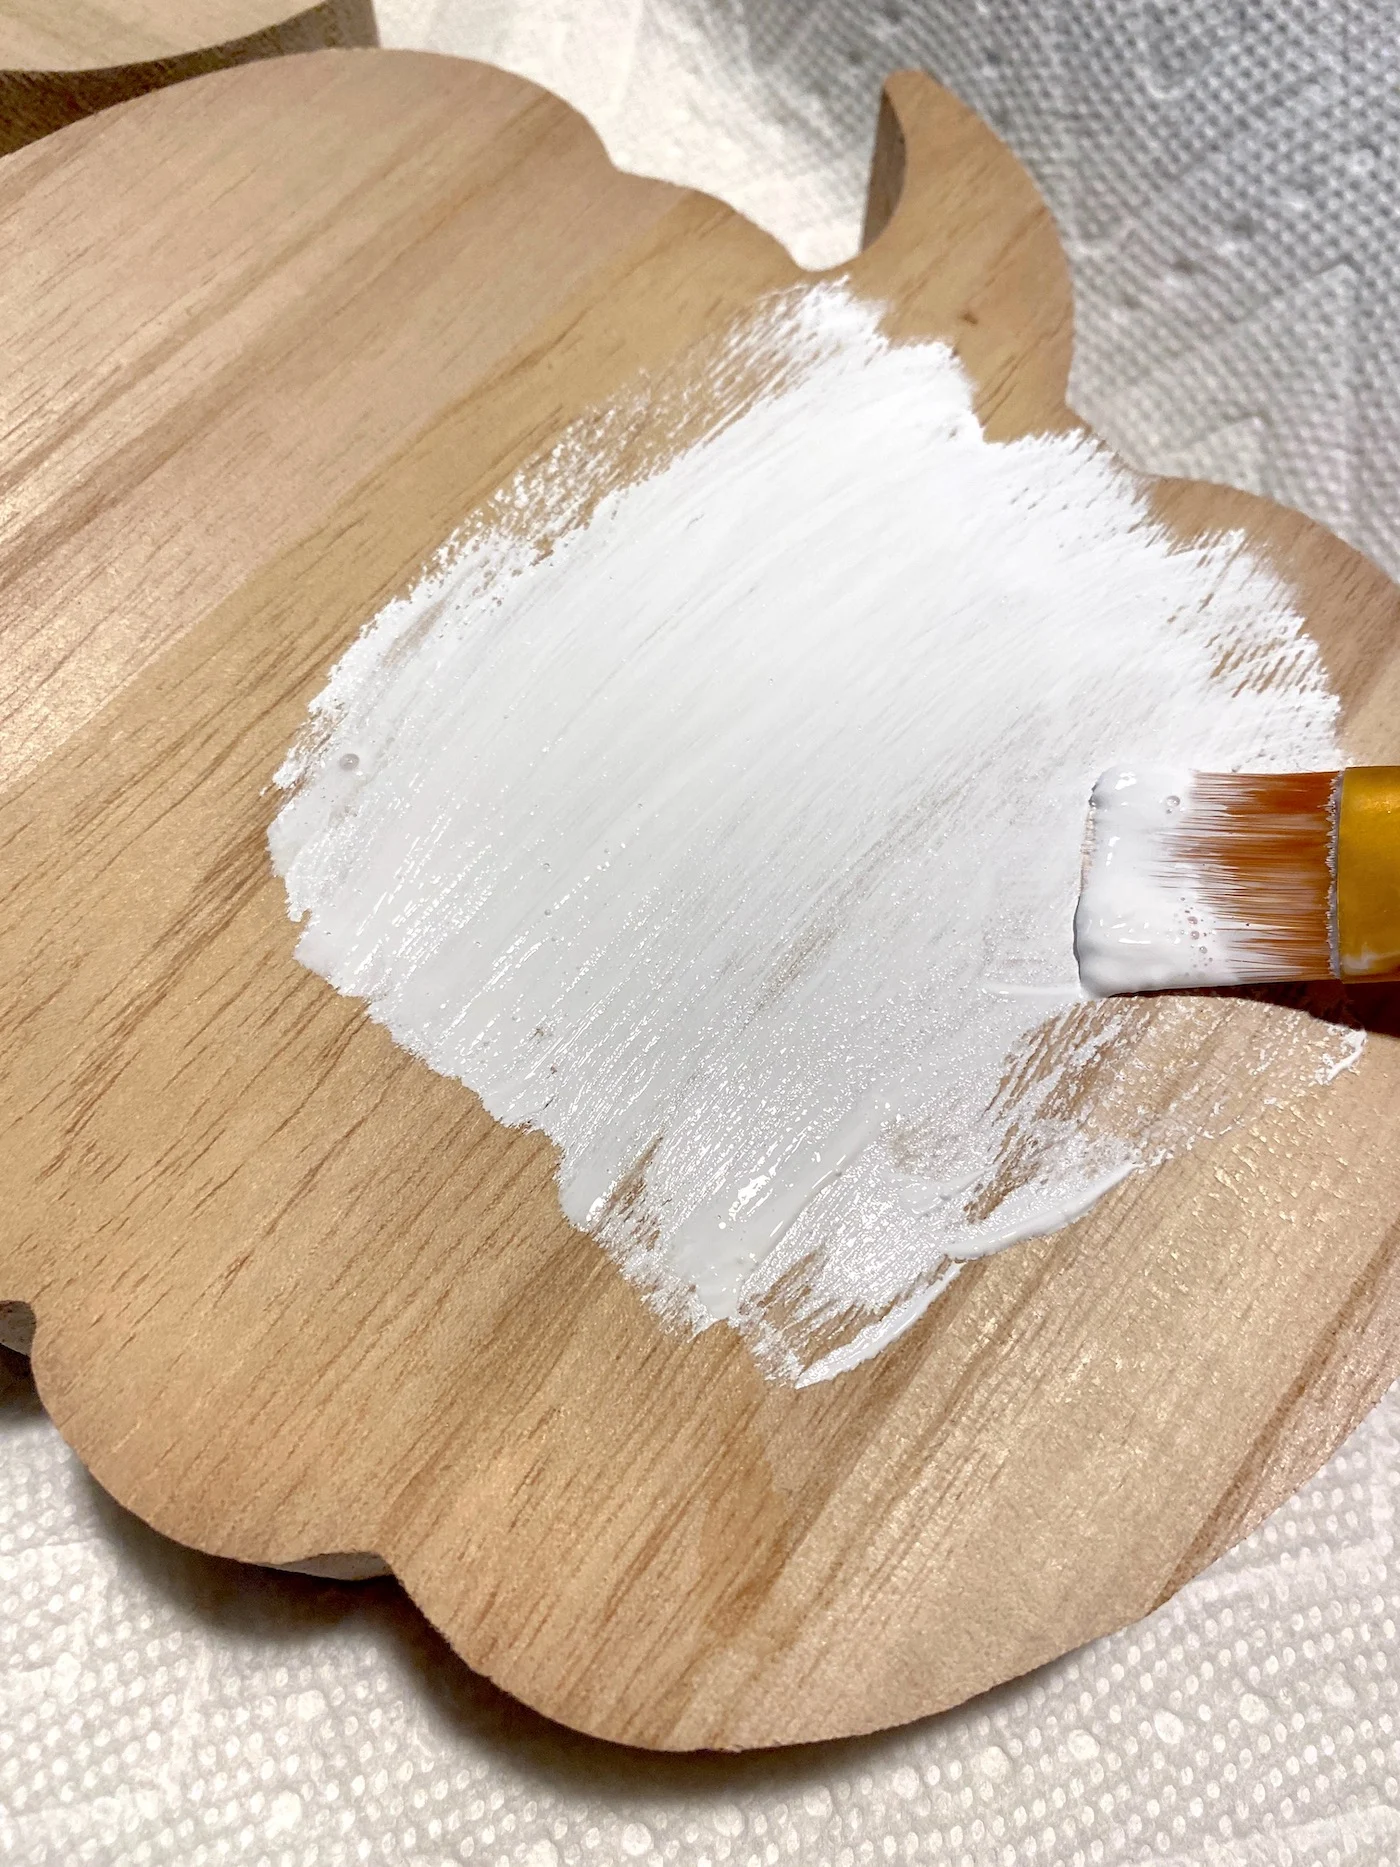 Pintando uma abóbora de madeira com tinta branca